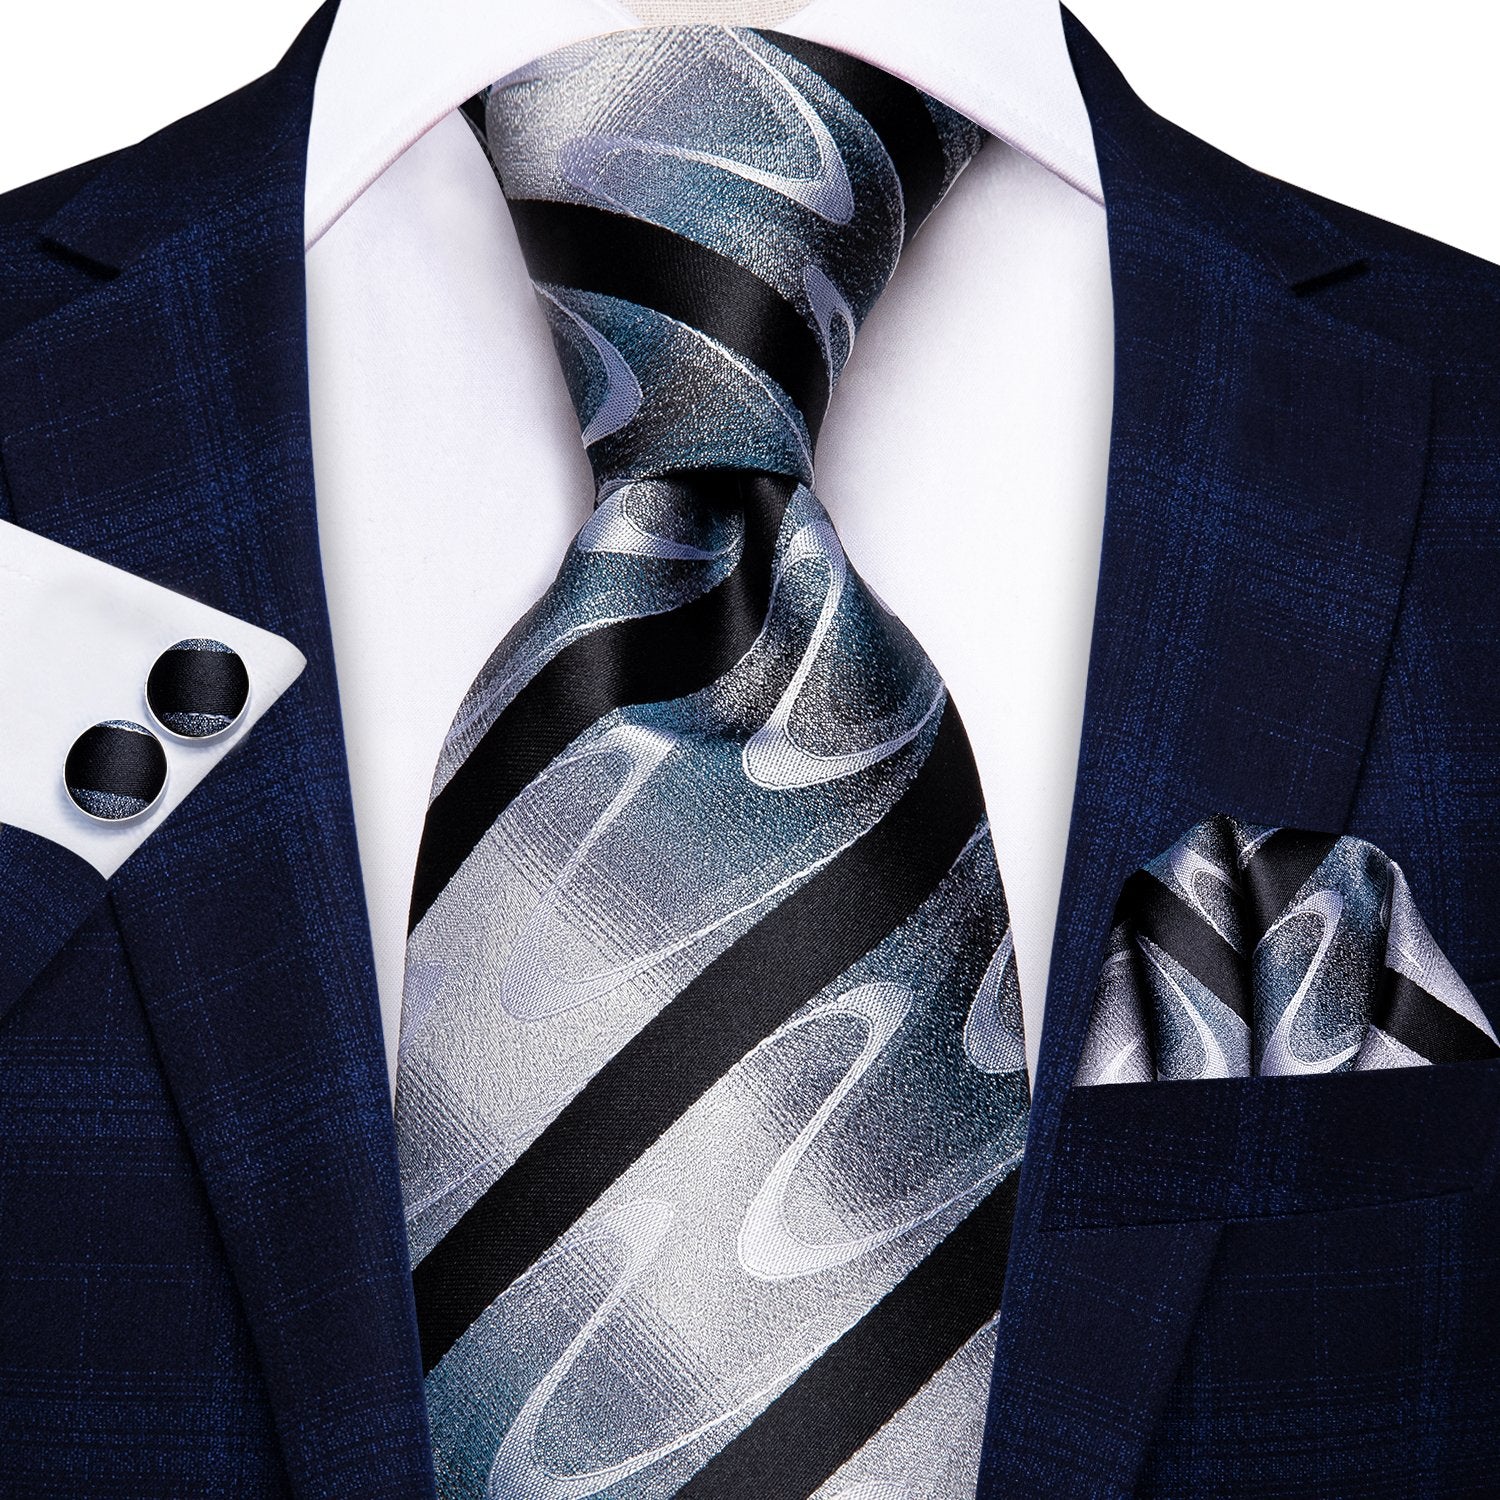 Black White Wave Striped Tie Handkerchief Cufflinks Set with Wedding Brooch